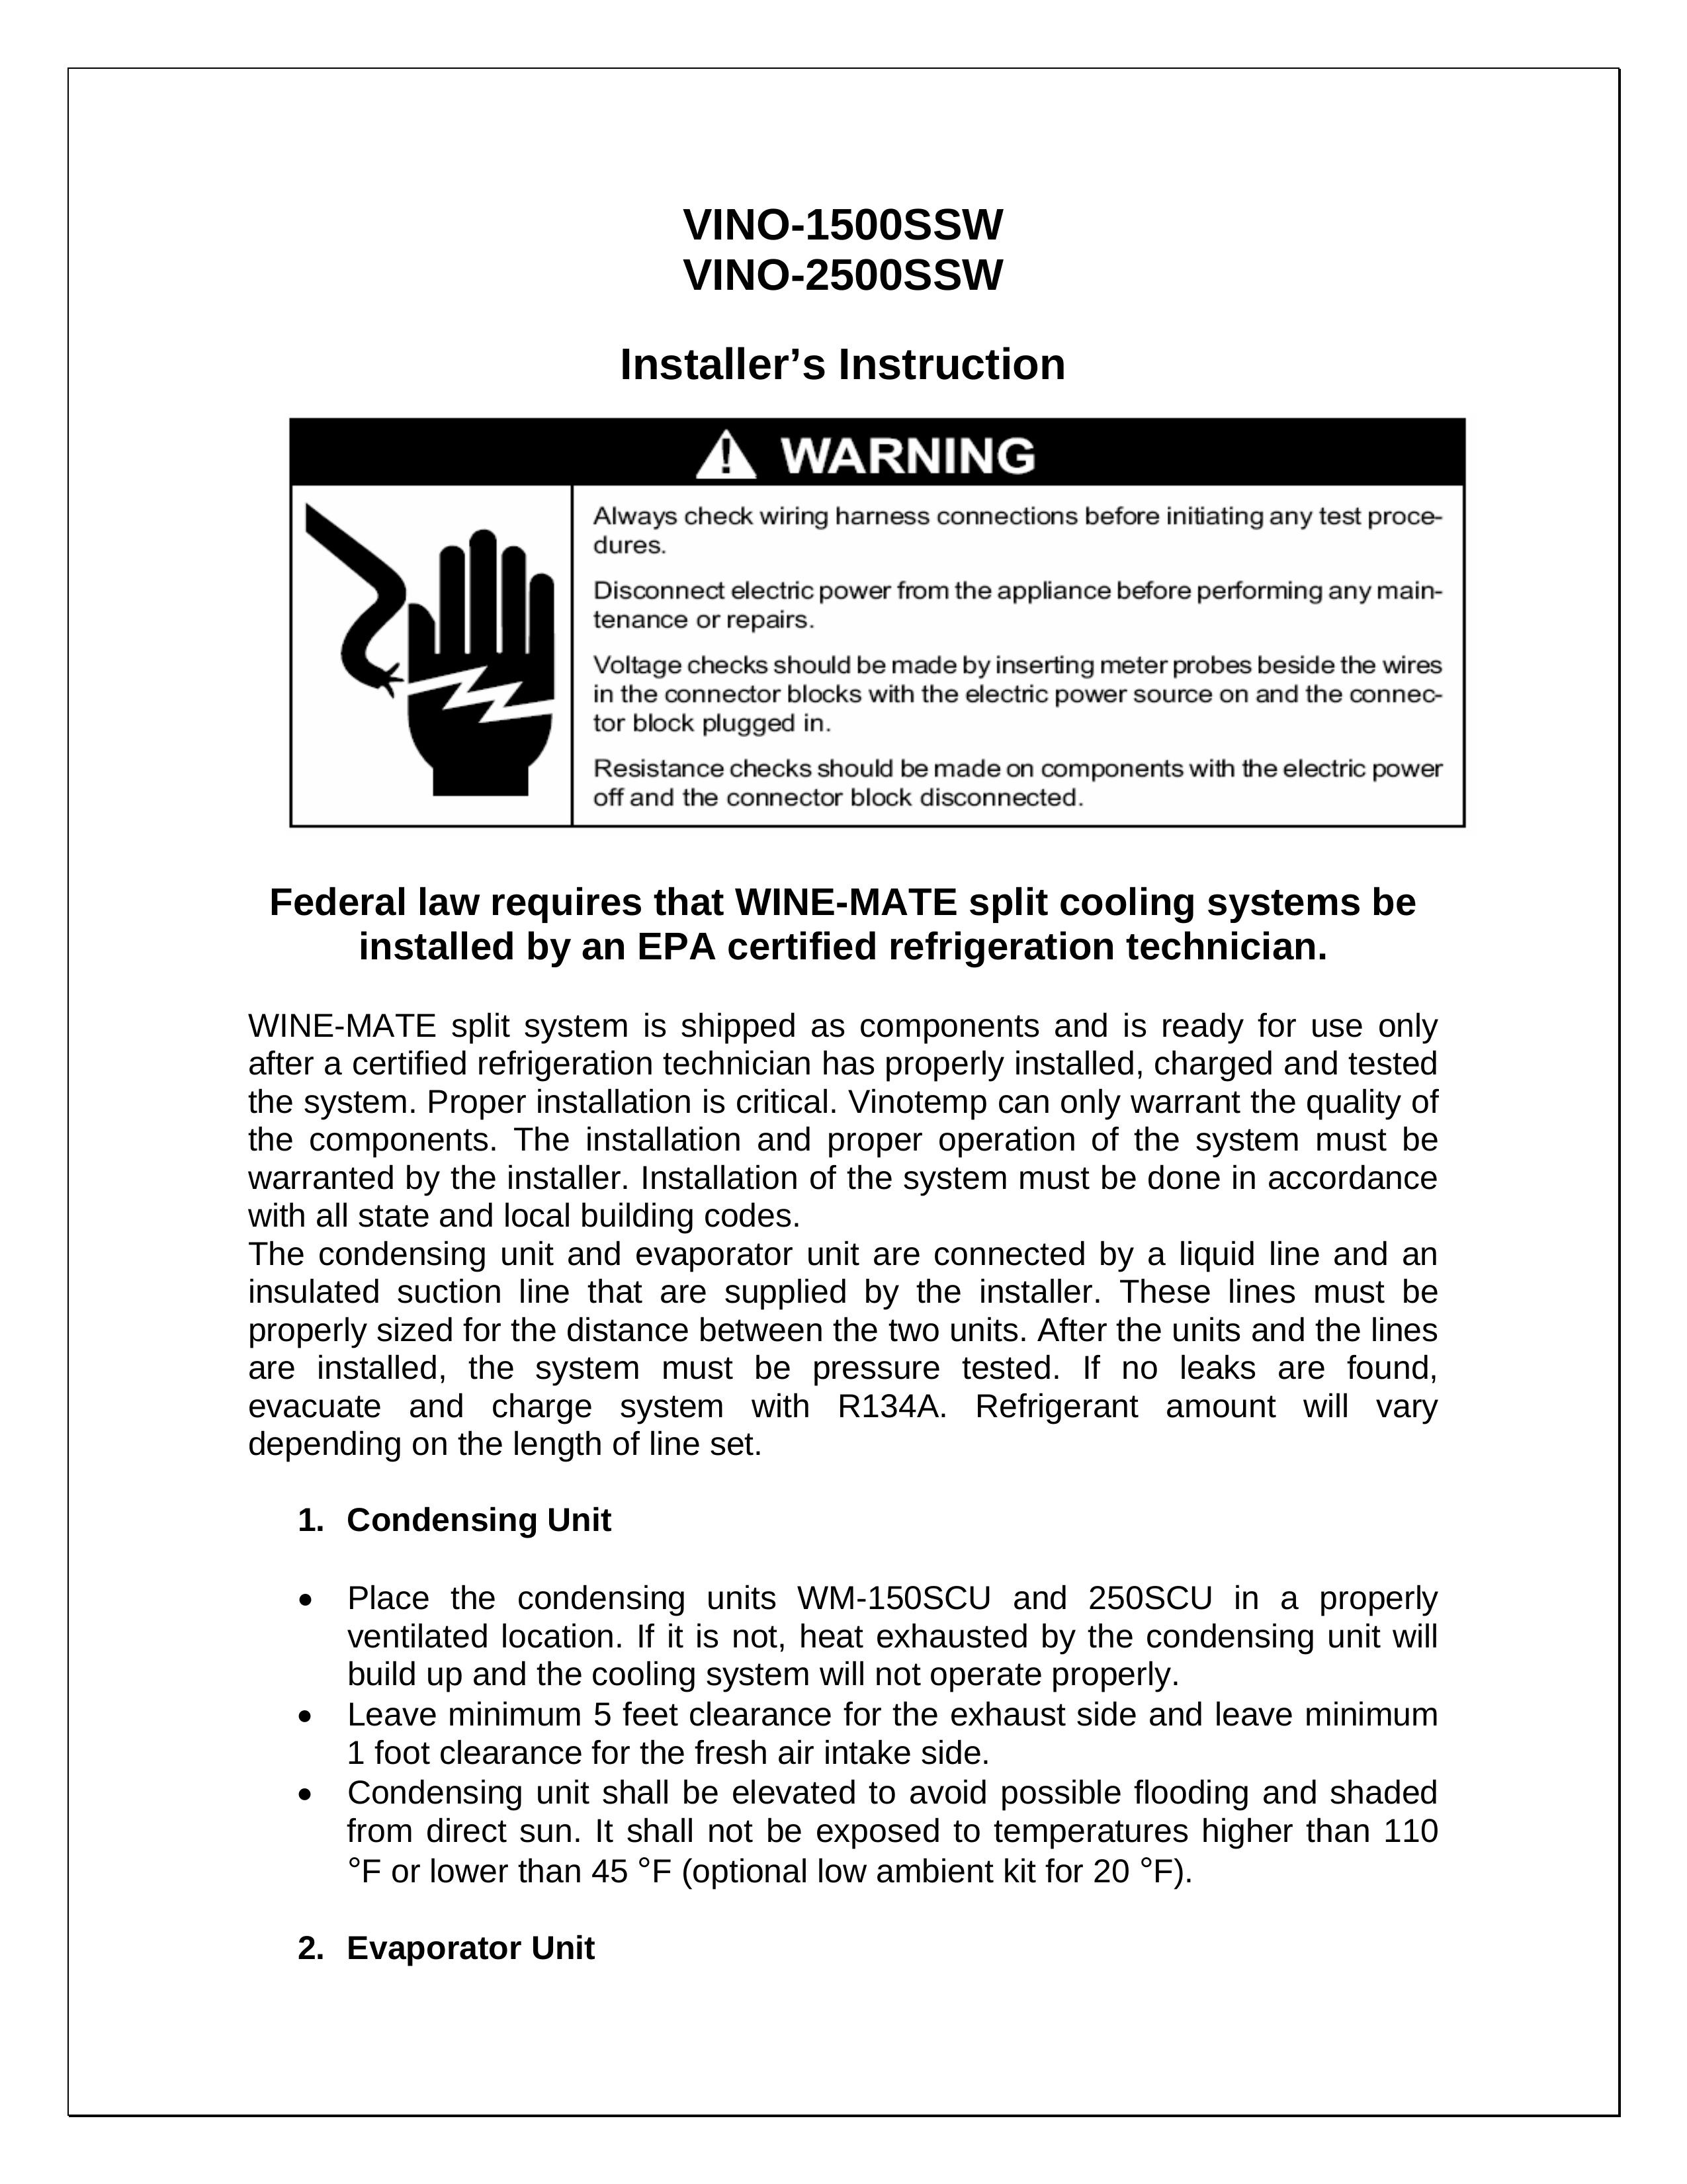 Vinotemp VINO-2500SSW Refrigerator User Manual